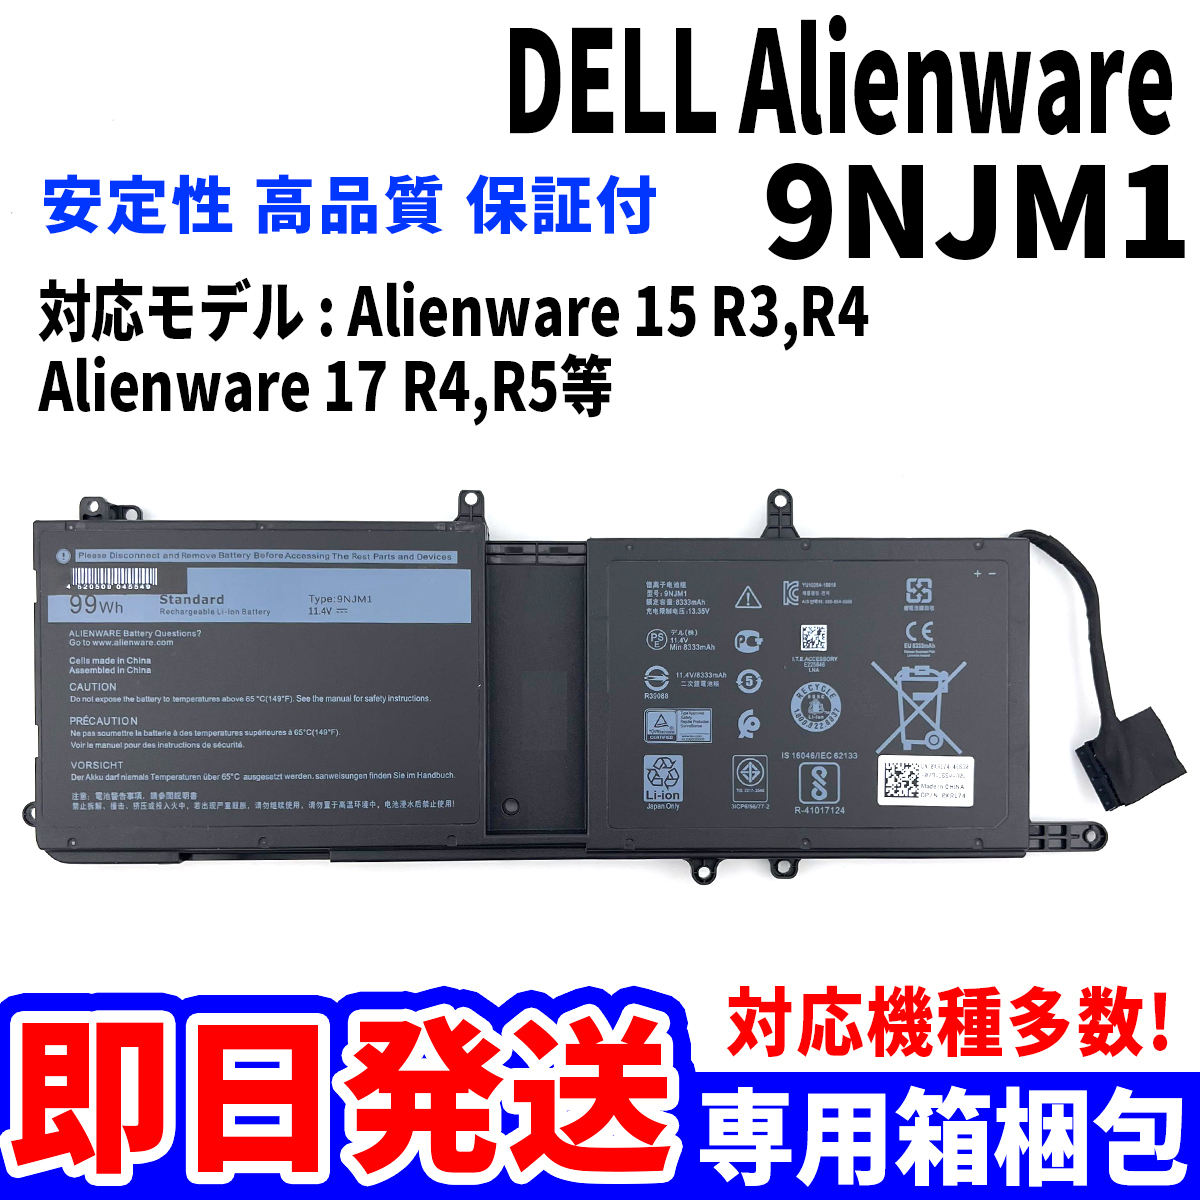 純正新品! DELL Alienware 9NJM1 バッテリー 15 R3 R4 17 R4 R5 シリーズ 電池パック交換 パソコン 内蔵battery 単品_画像1